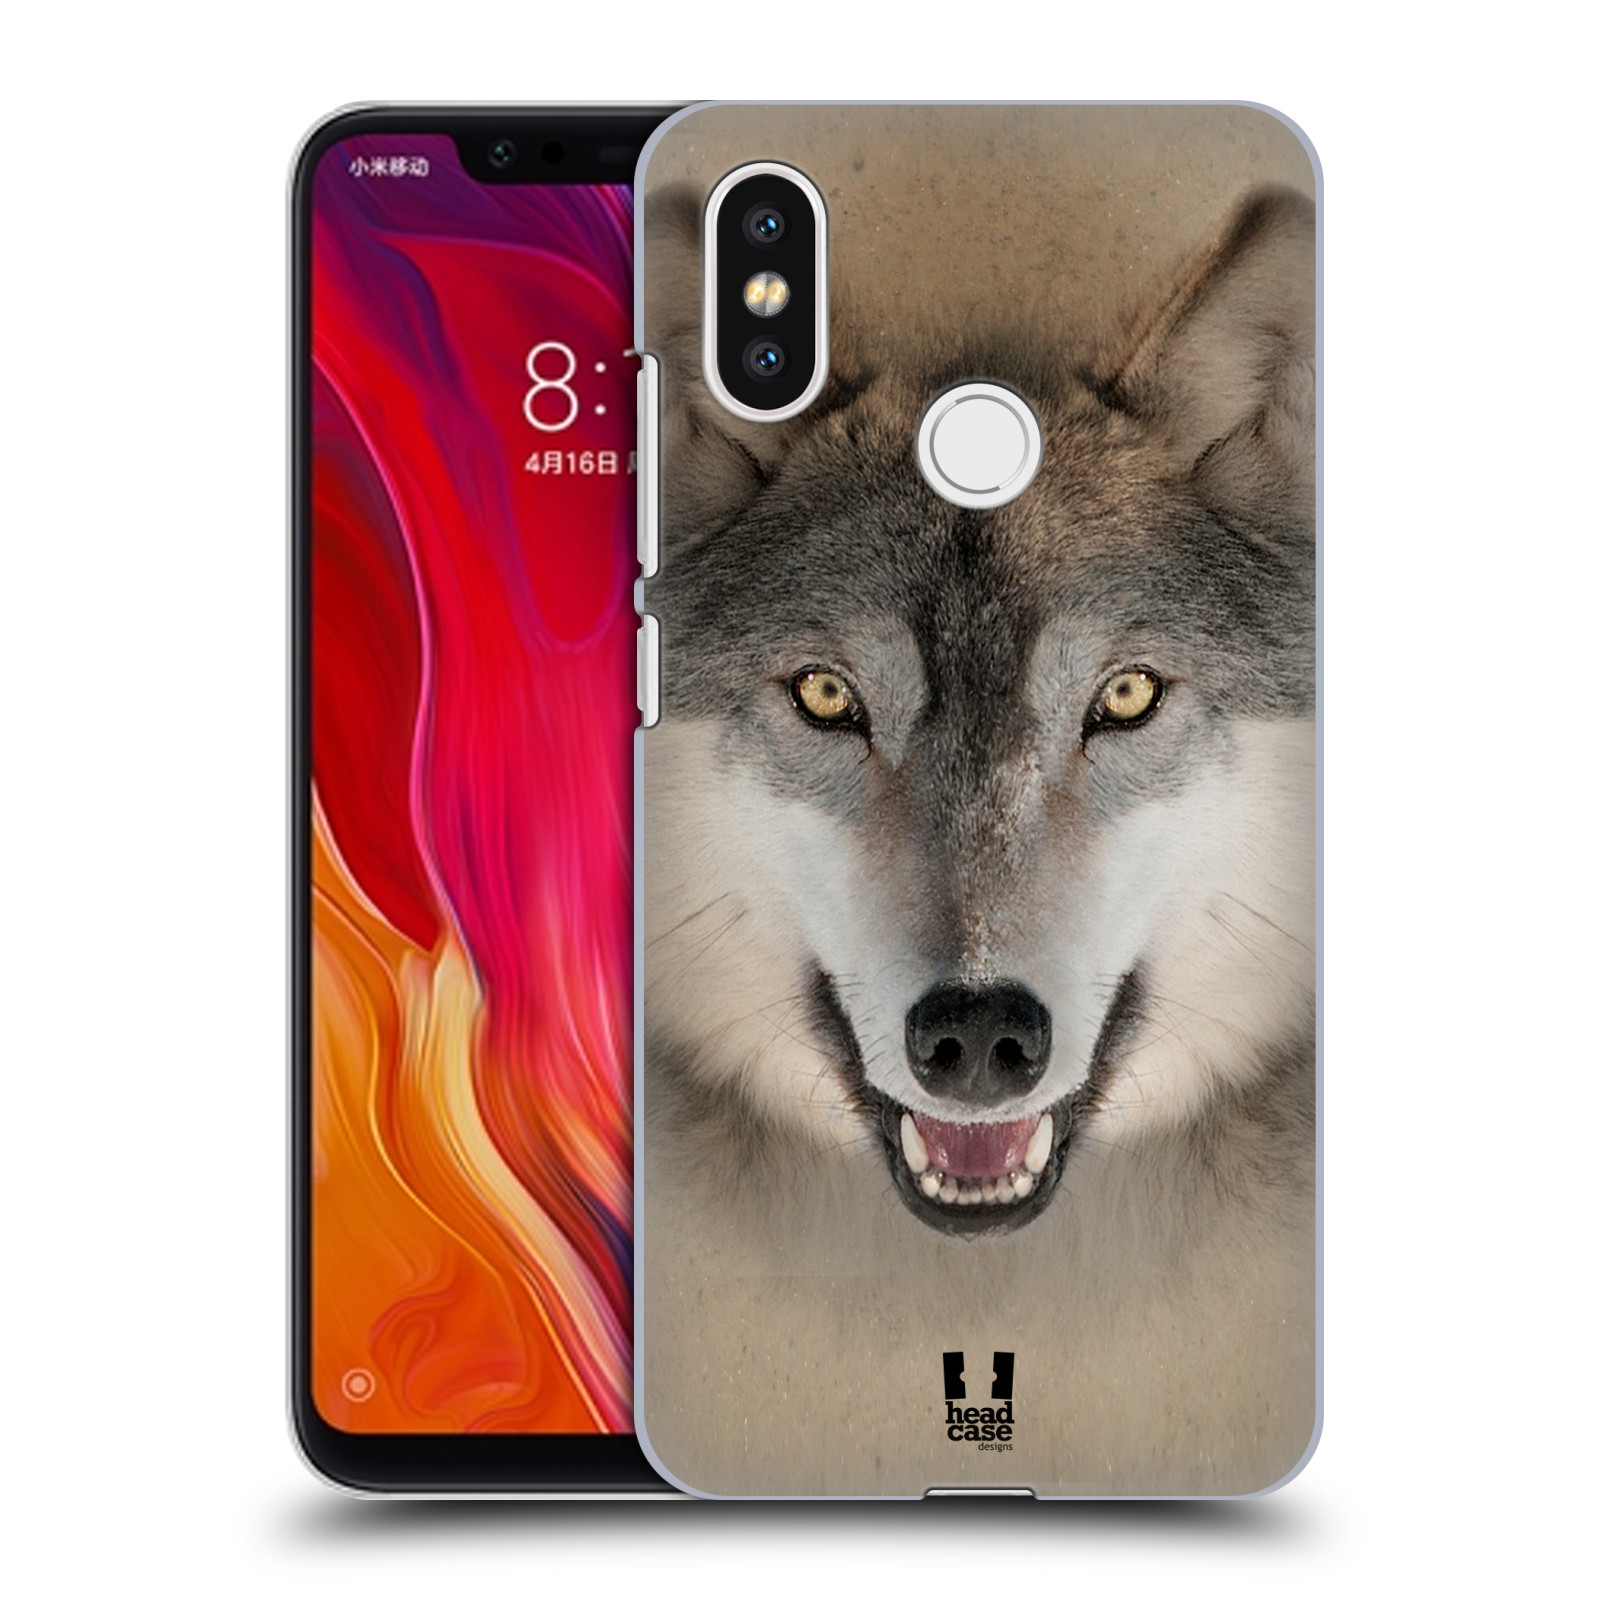 HEAD CASE plastový obal na mobil Xiaomi Mi 8 vzor Zvířecí tváře 2 vlk šedý